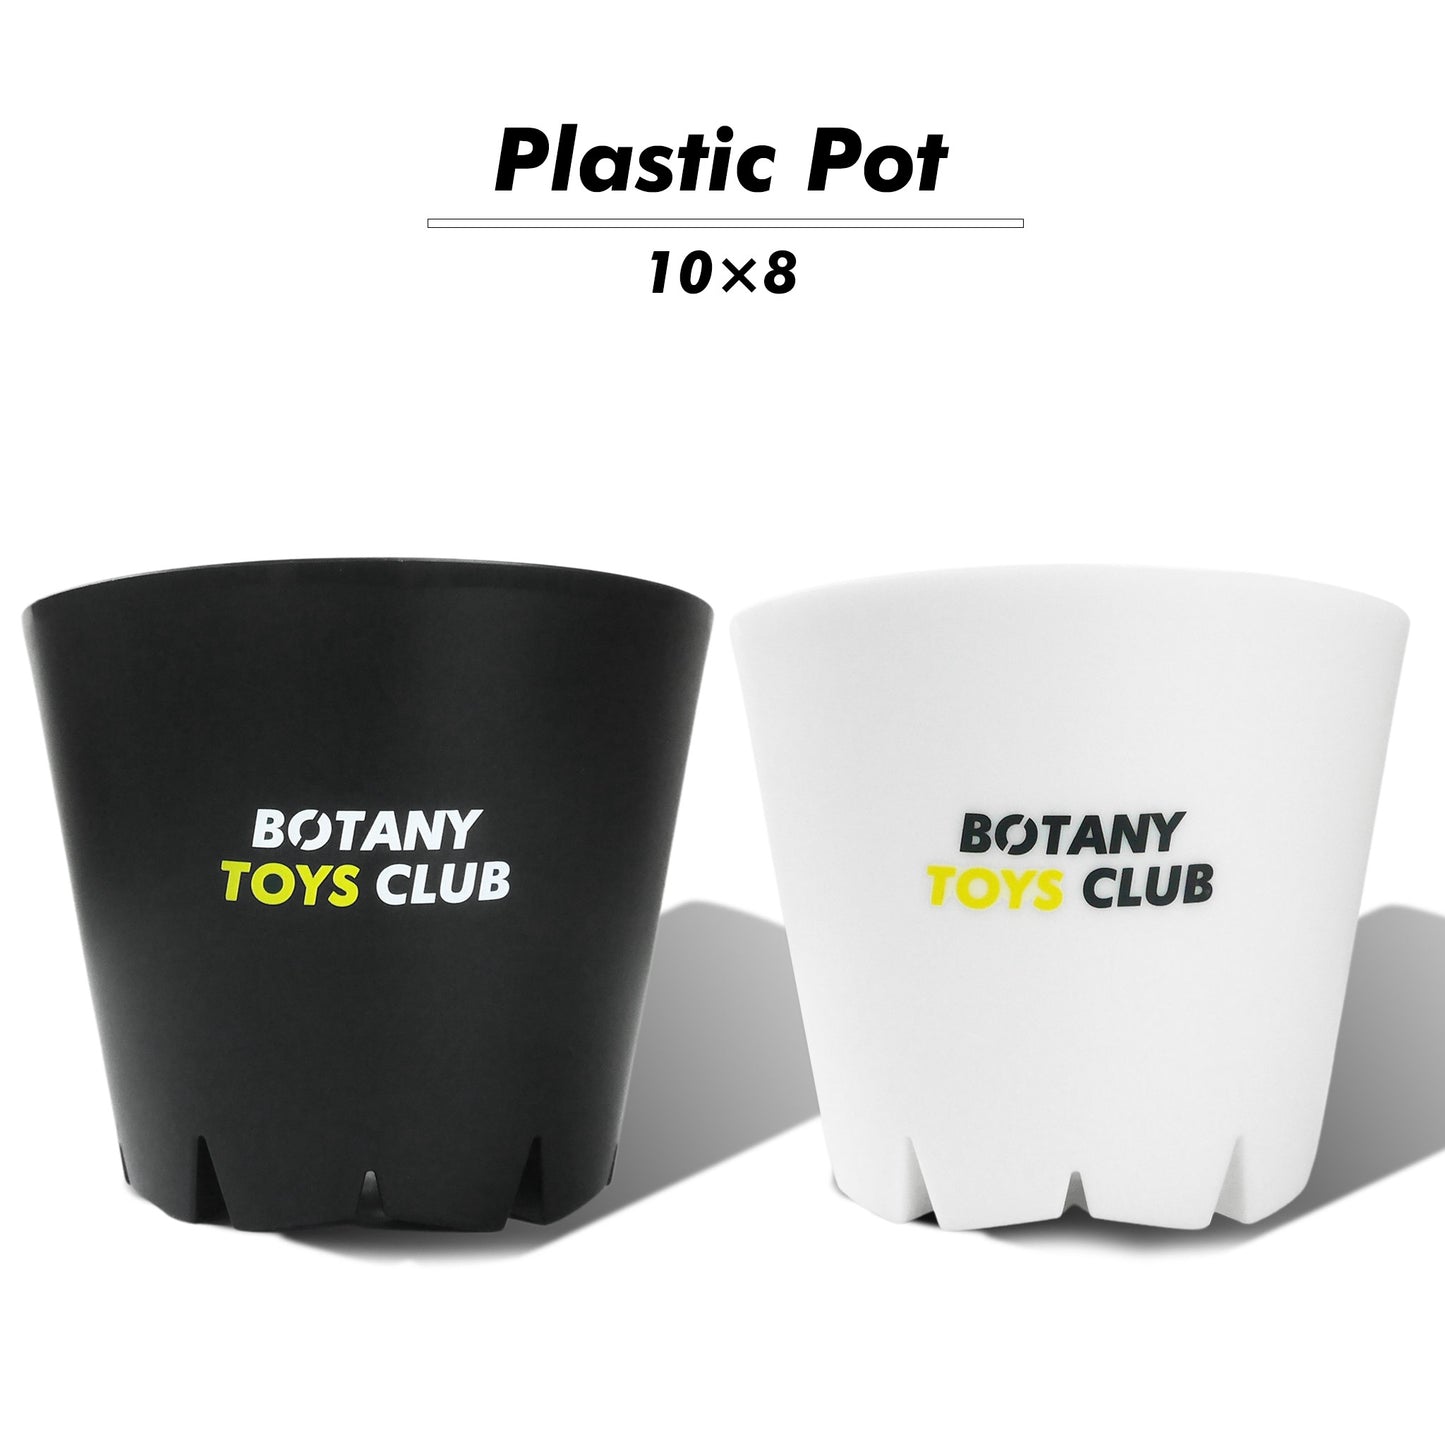 Plastic Pot 10×8